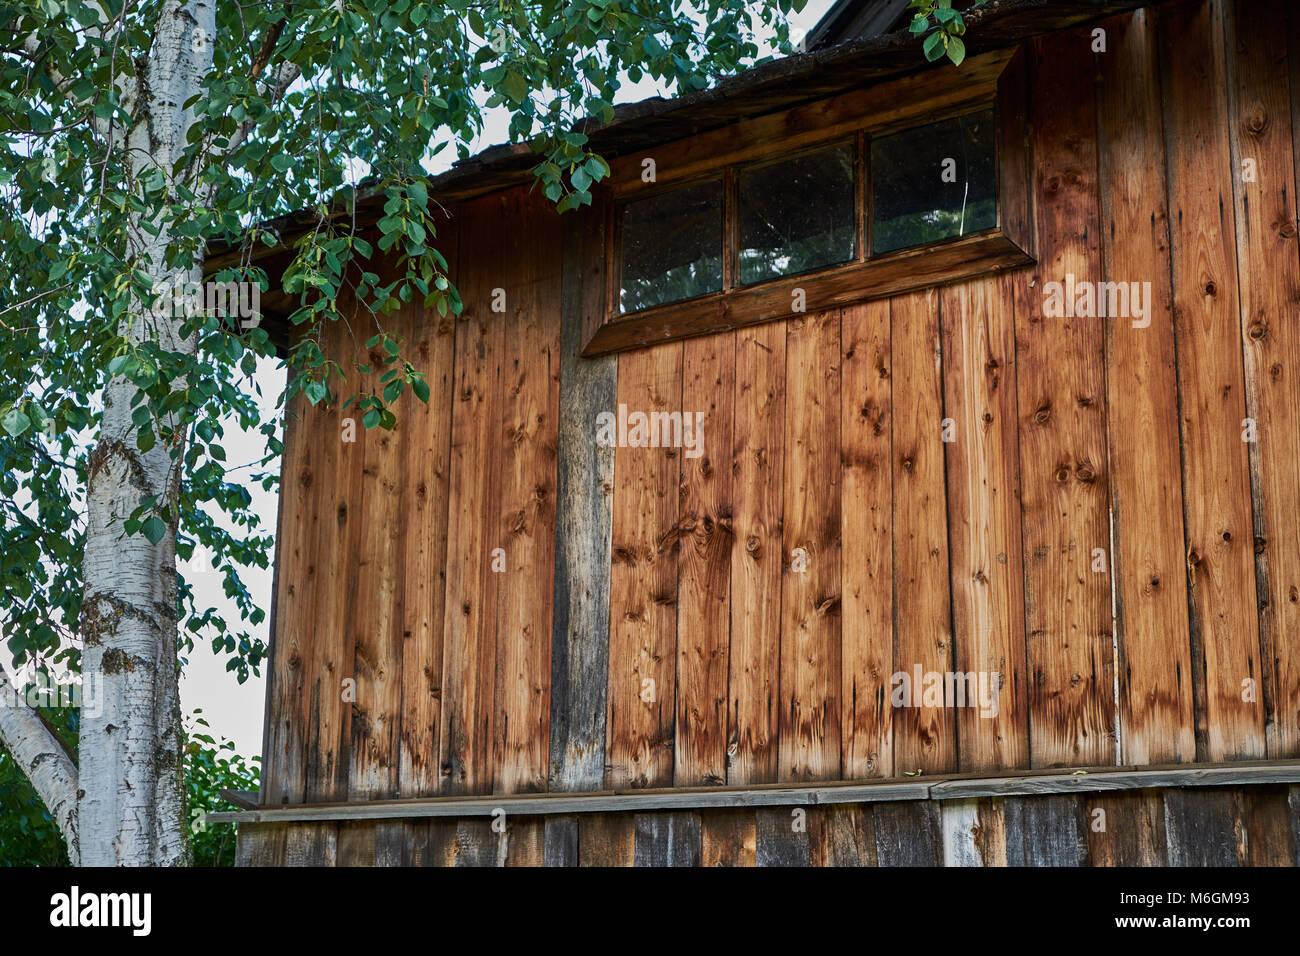 Casa di campagna, la sua facciata adornata da verdeggianti in legno condivide lo spazio con una giovane betulla Foto Stock